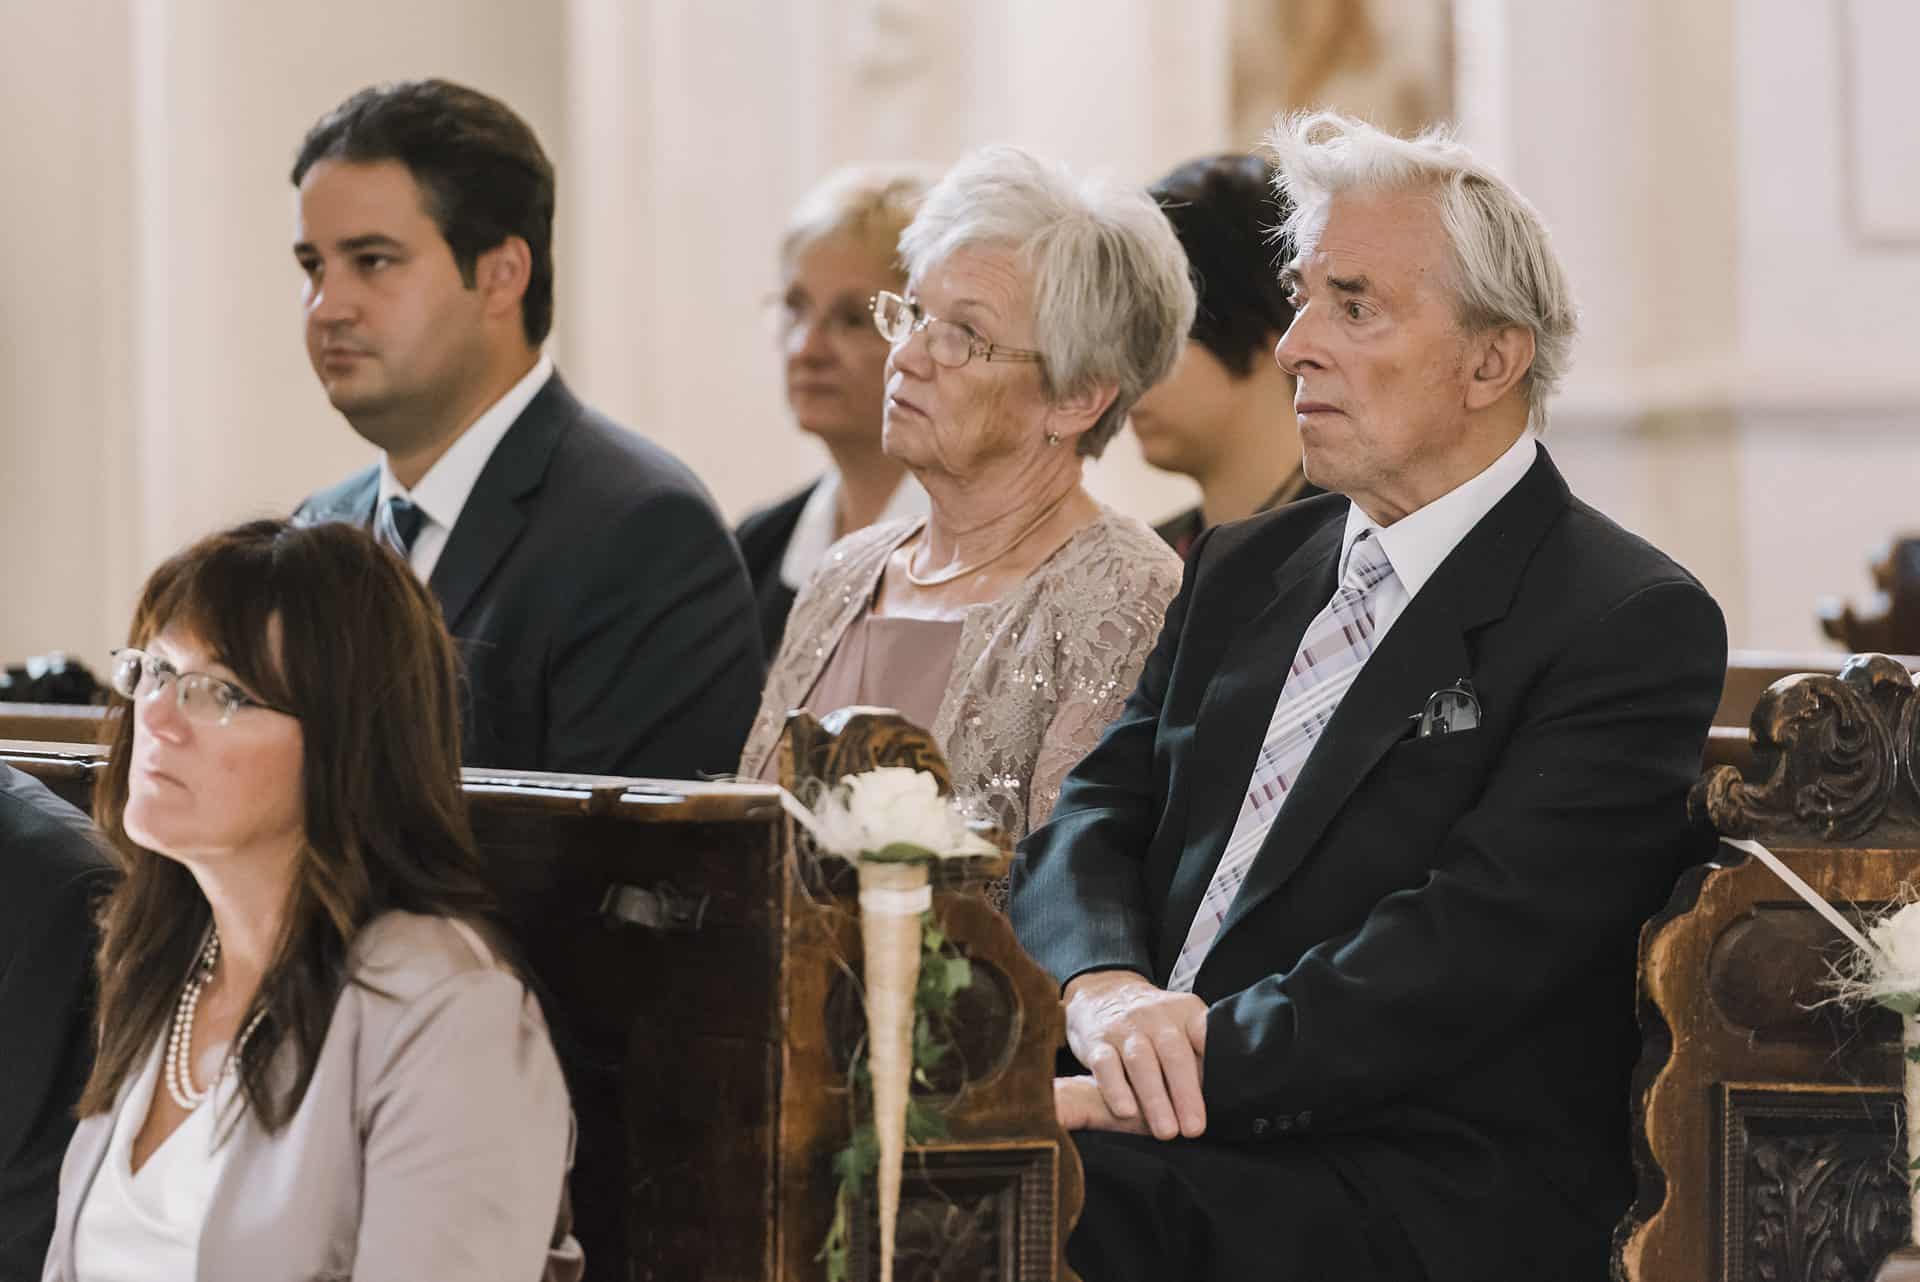 Eine Gruppe von Menschen sitzt bei einer Hochzeit in Kirchenbänken.